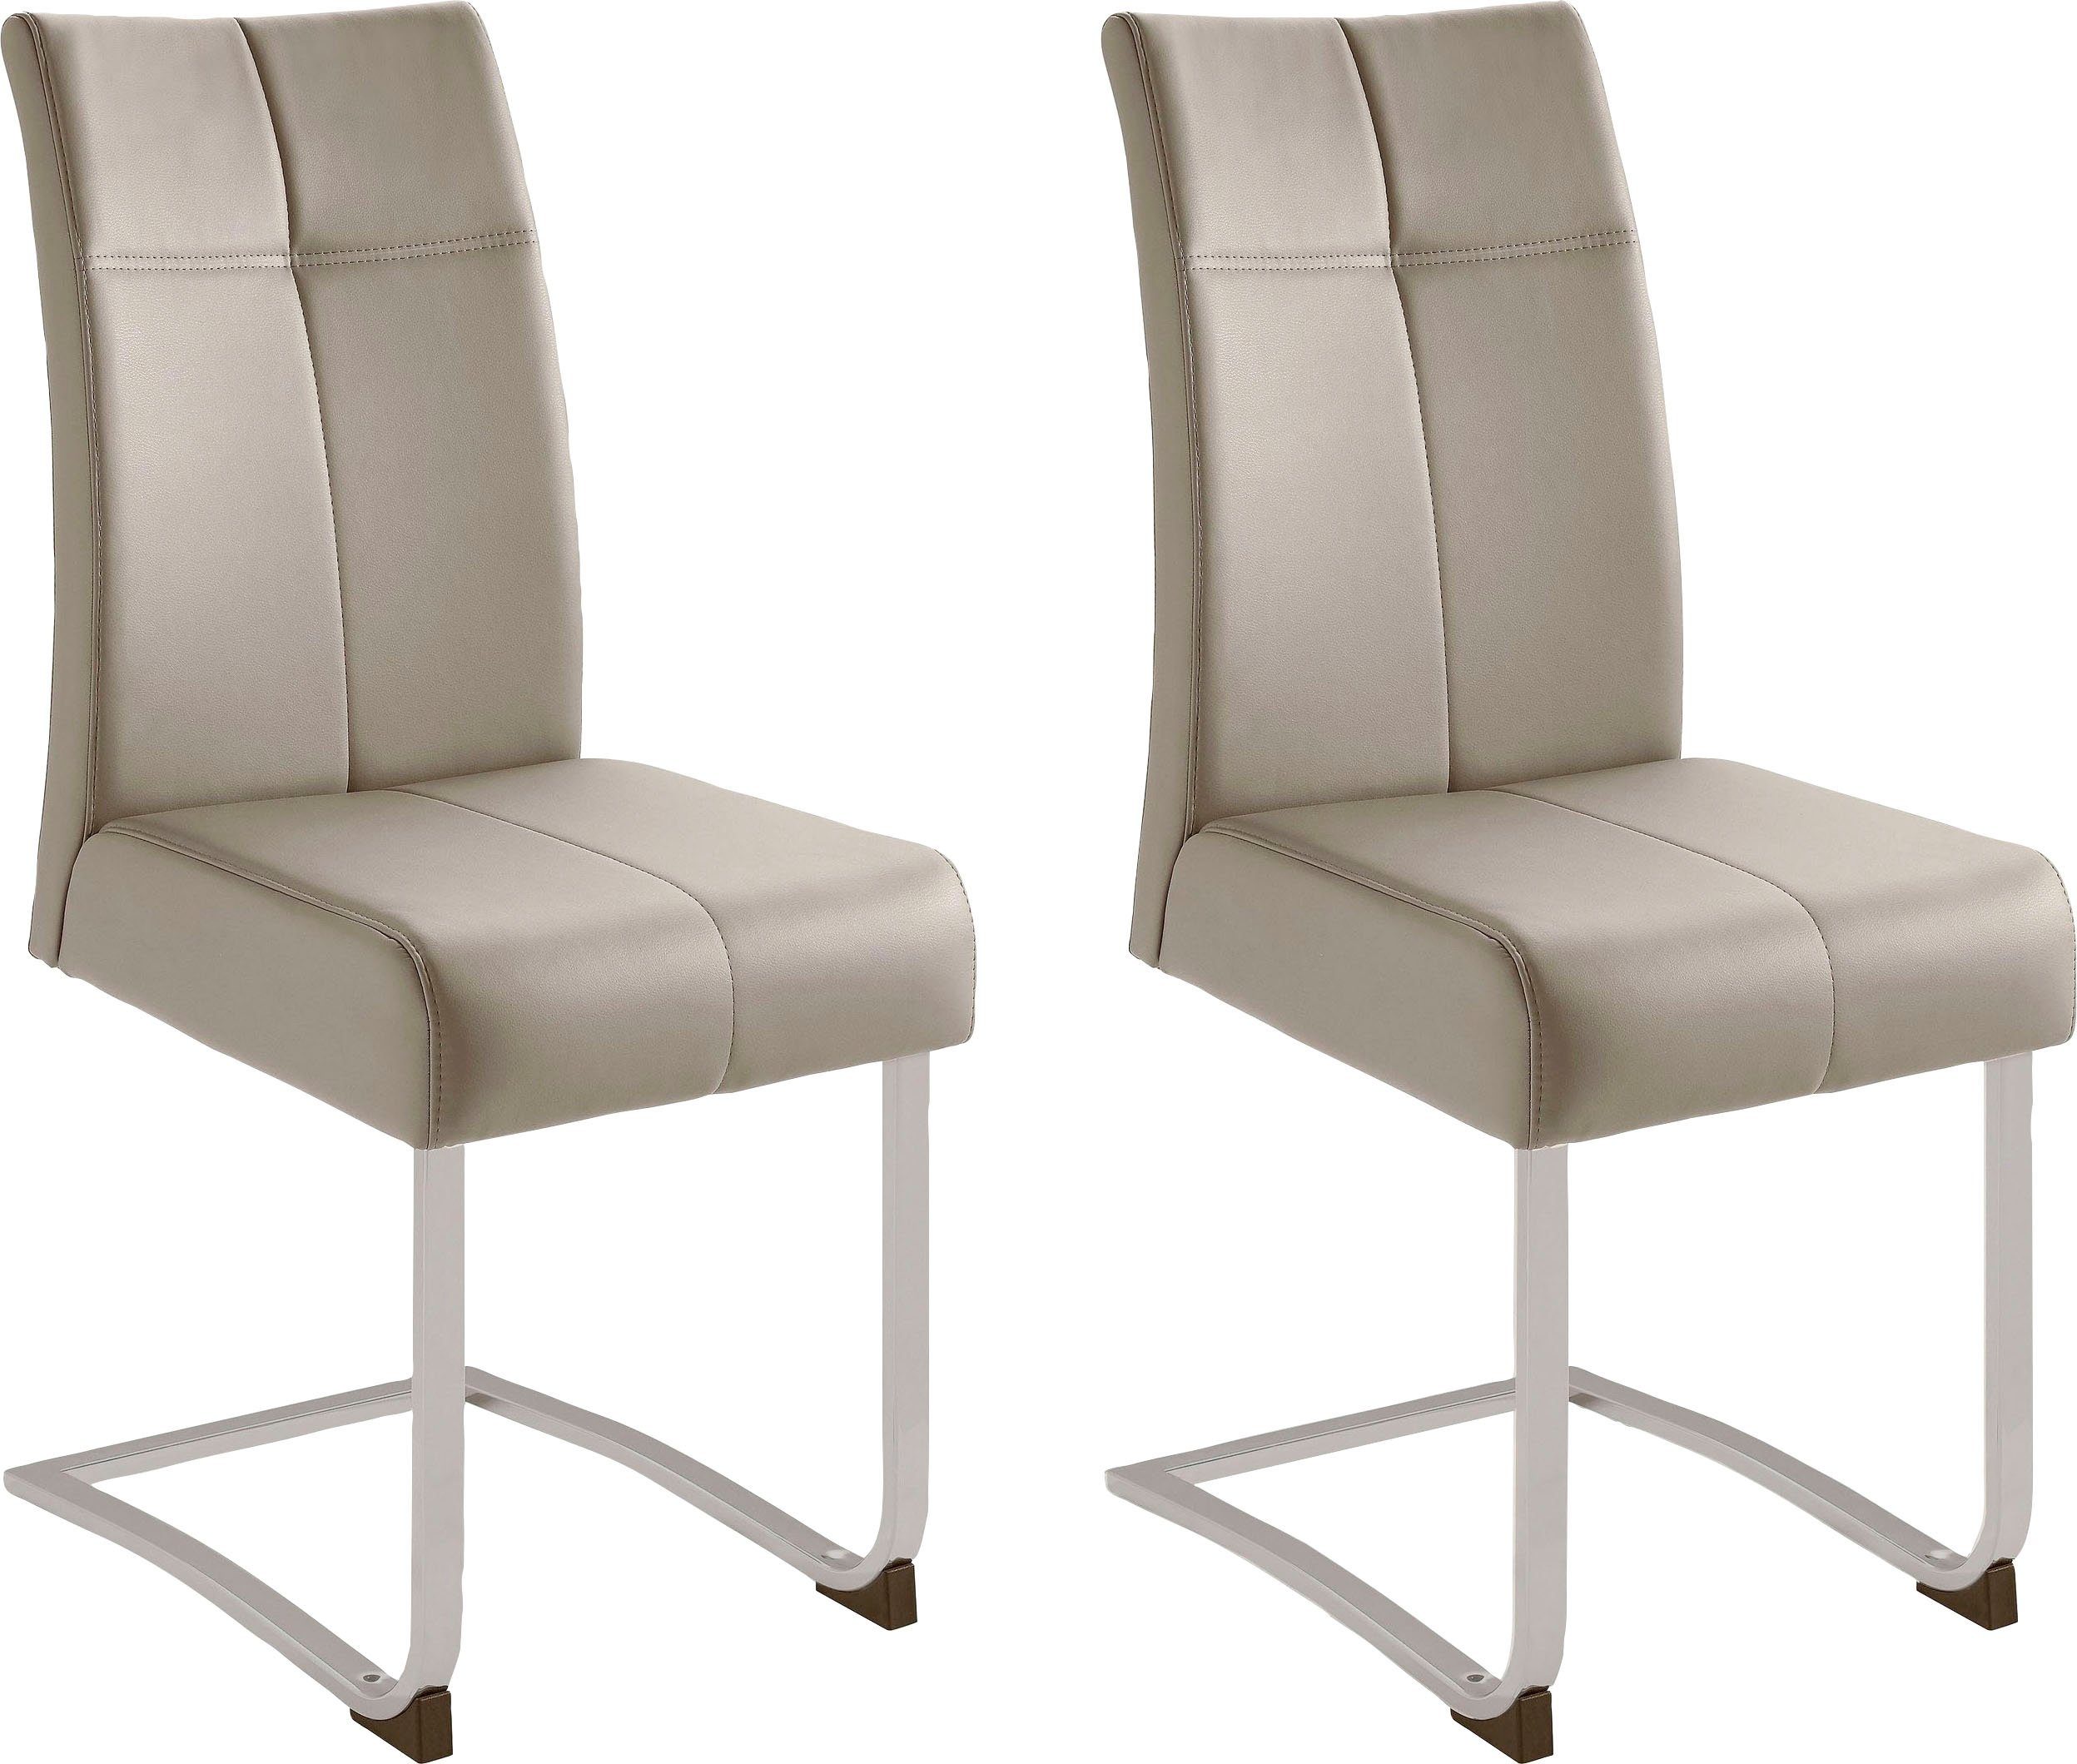 Home affaire Vrijdragende stoel RAB Bekleding in verschillende kwaliteiten, maximaal vermogen 120 kg